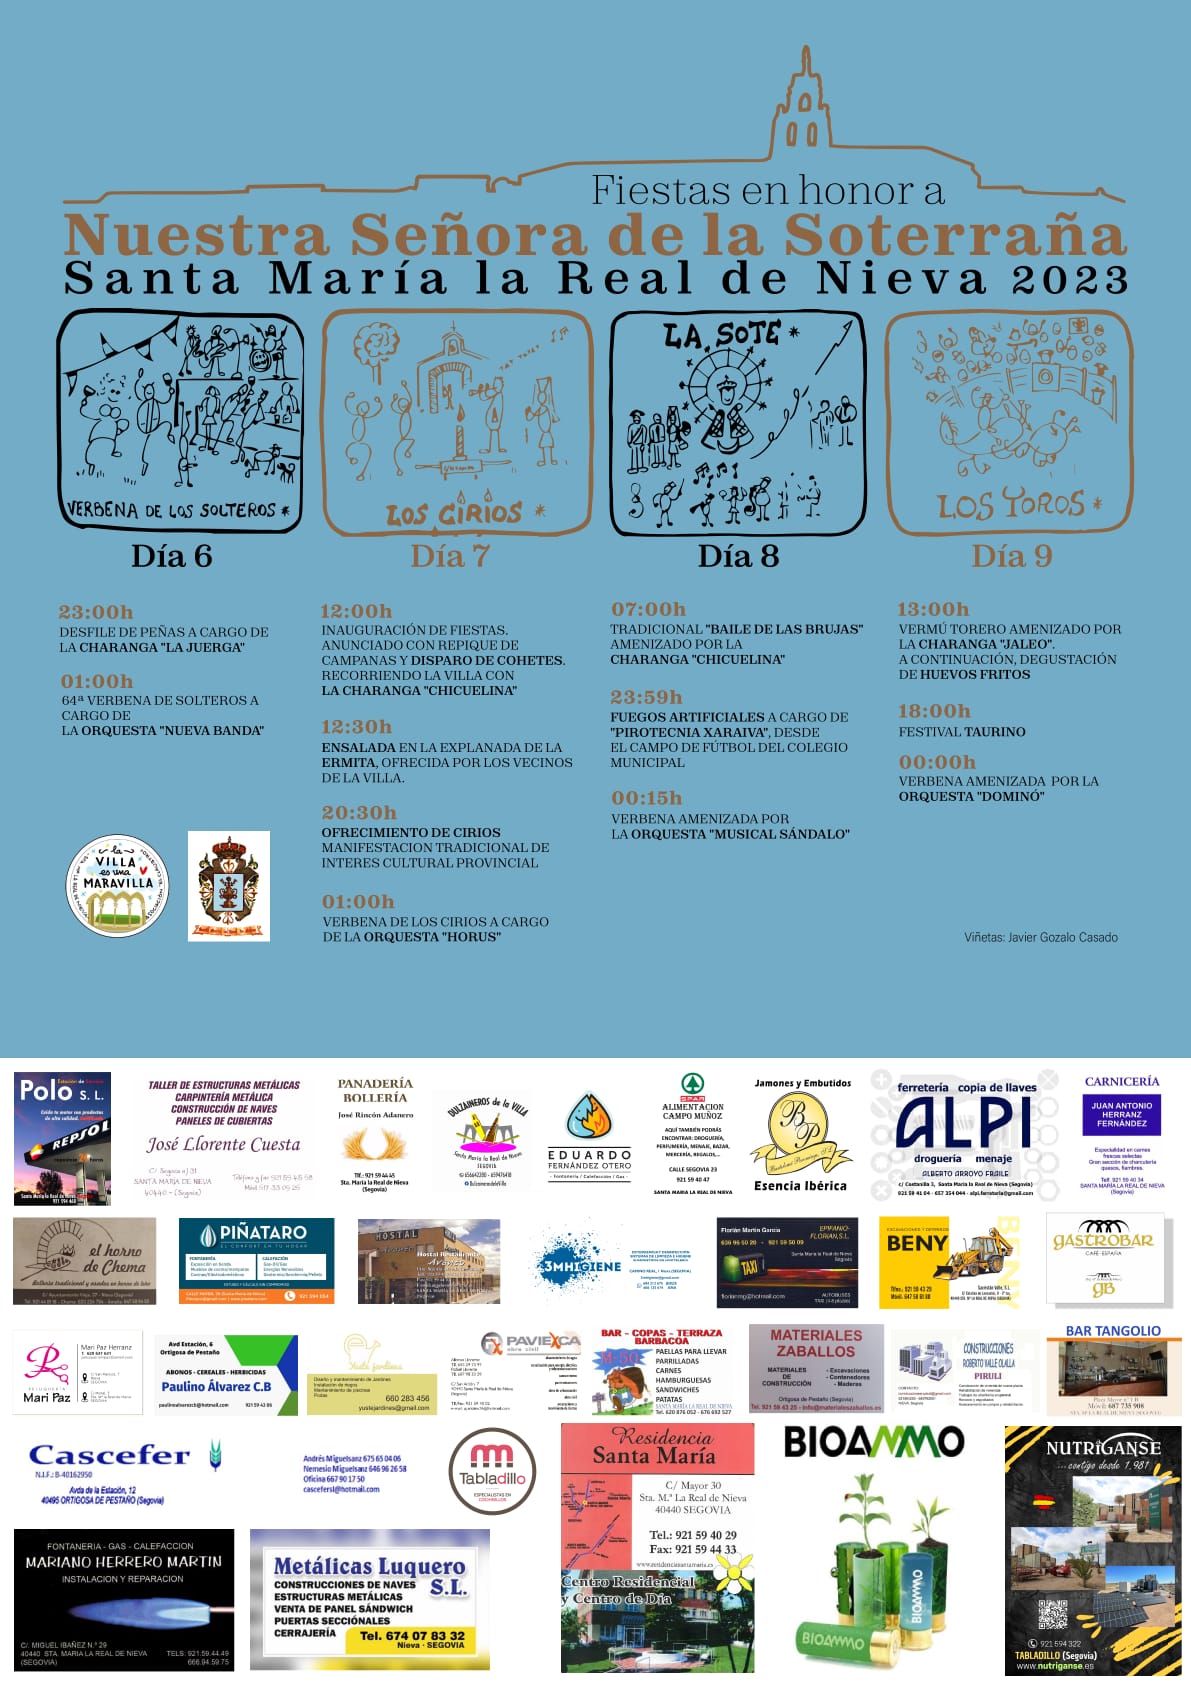 Fiestas_de_Santa_María_la_Real_de_Nieva.jpg